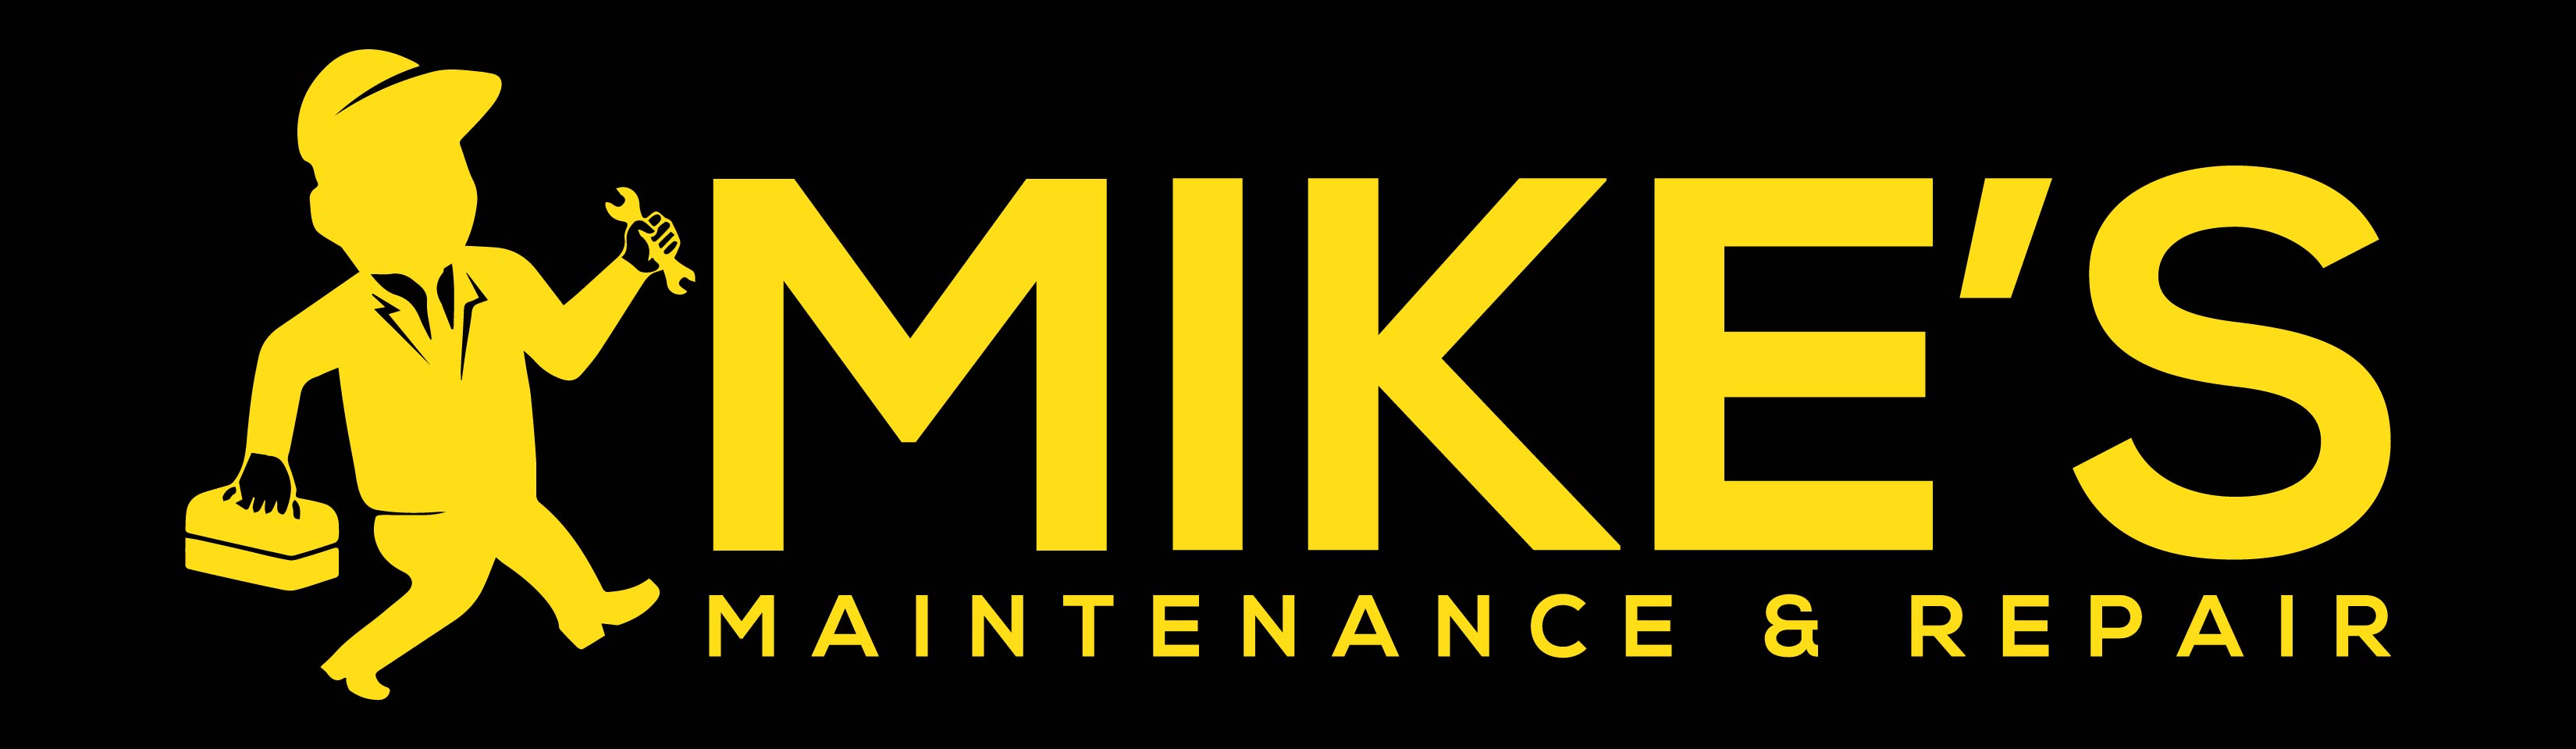 Mike's Maintenance & Repair